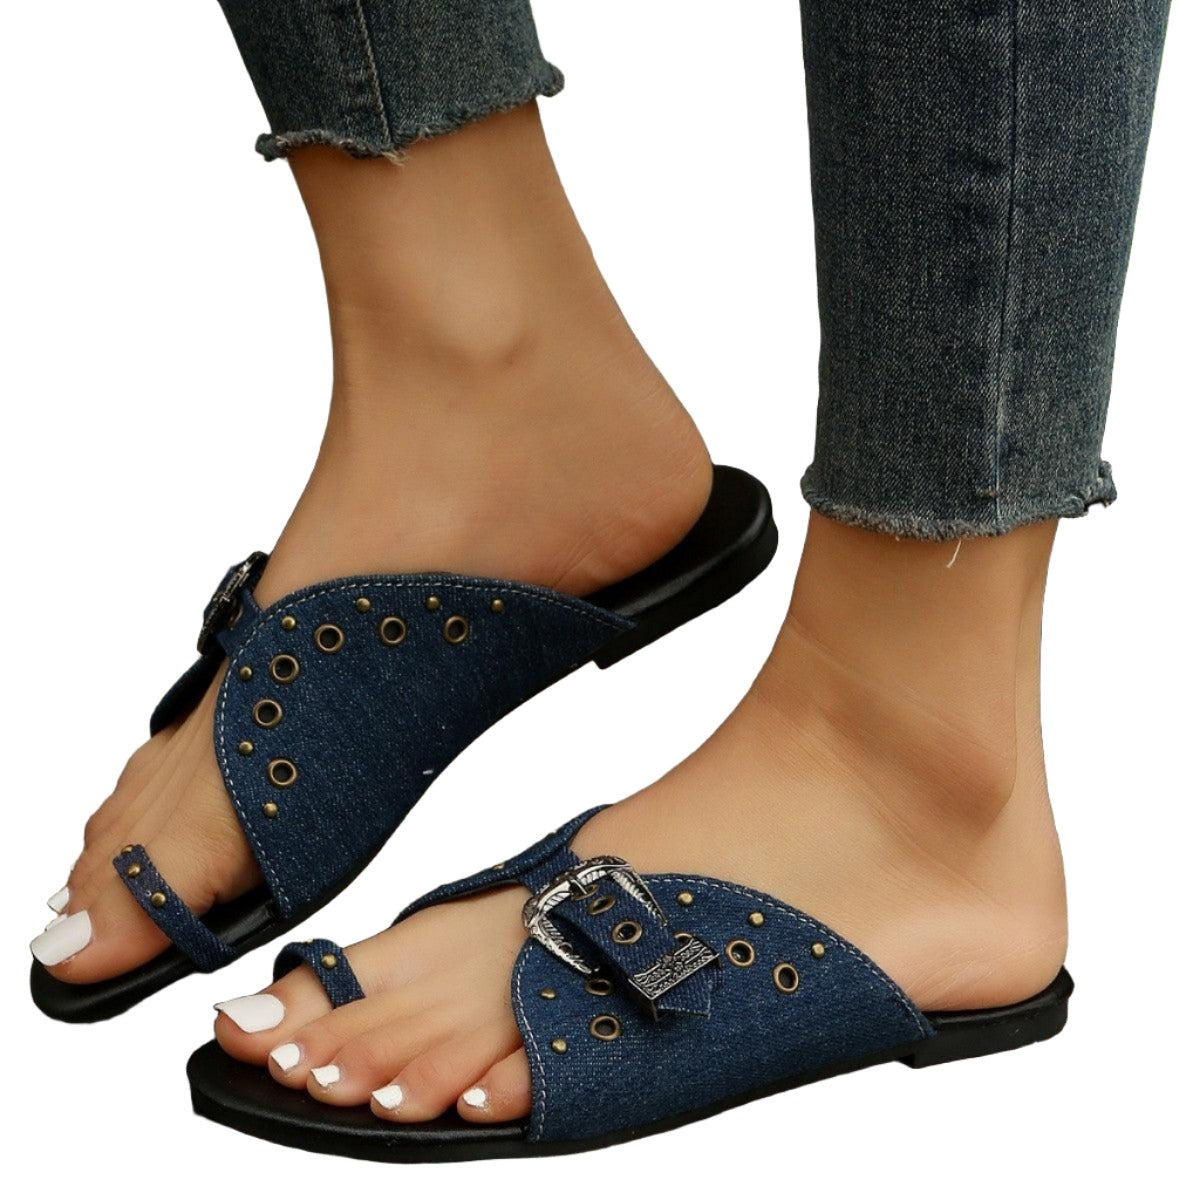 Women's Shoes - Sandals Open Toe Buckle Sandals